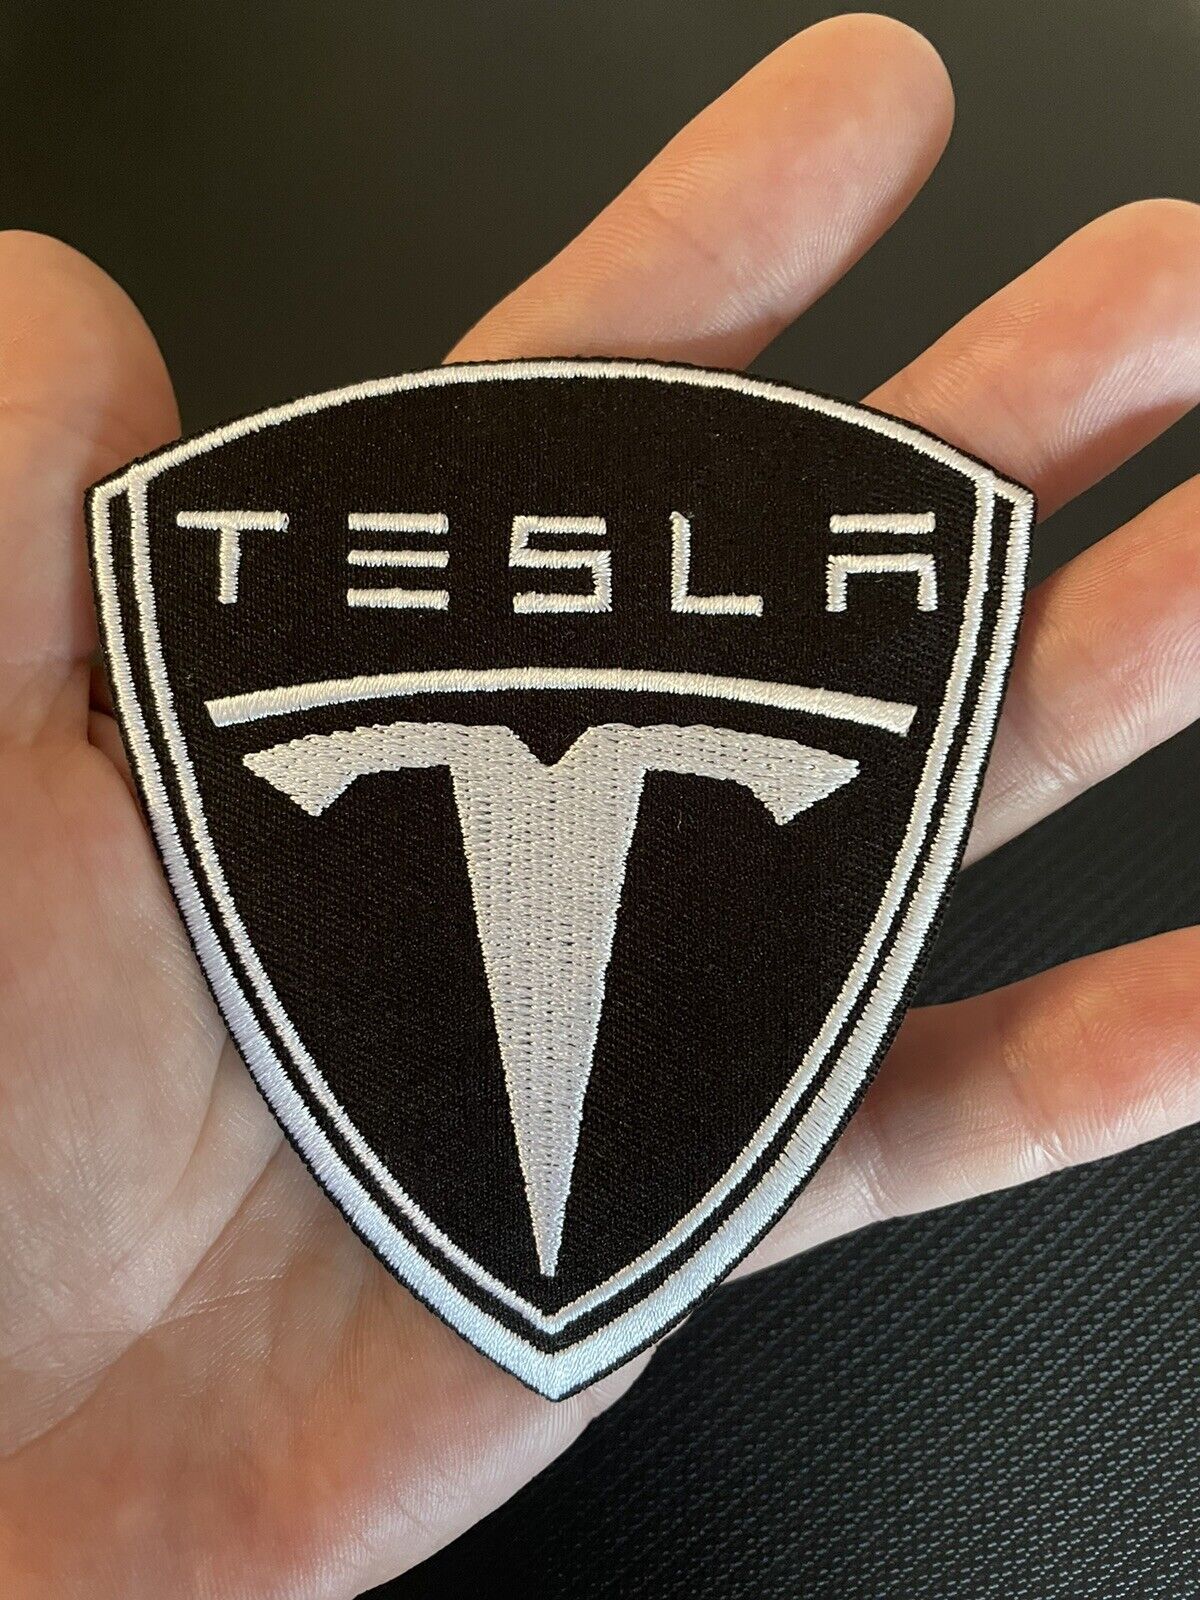 TESLA Patch (Large 4”inch) Iron On Or Sew On. Big Tesla Logo Largest Size EV XSY